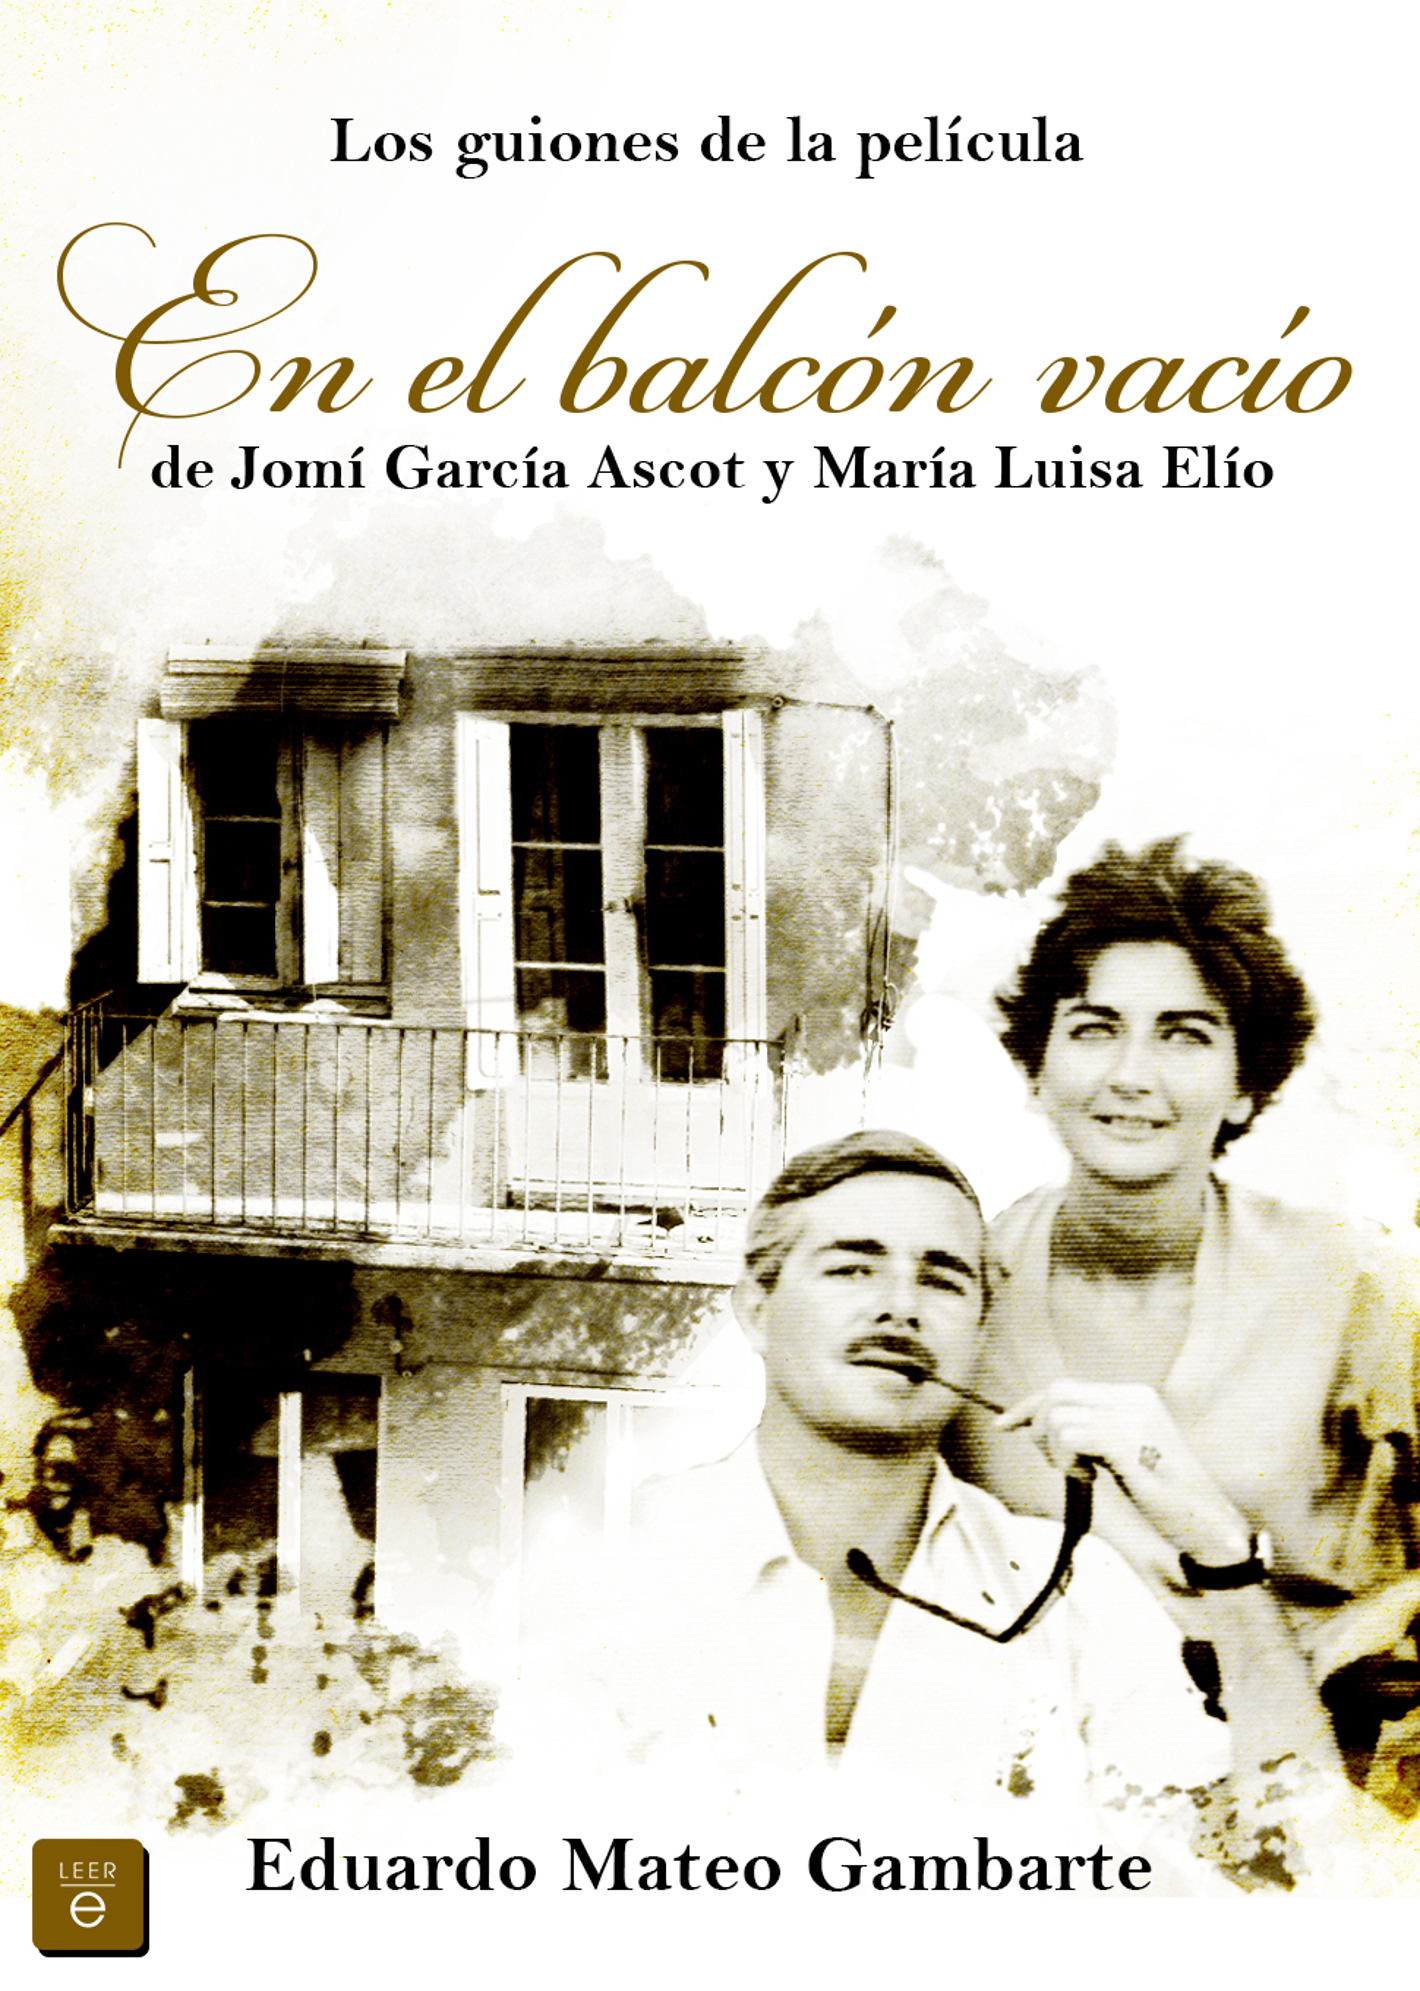 Descargar libro Los guiones de la película: en el balcón vacío de Jomí García Ascot y María Luisa Elío - Eduardo Mateo Gambarte - Epub